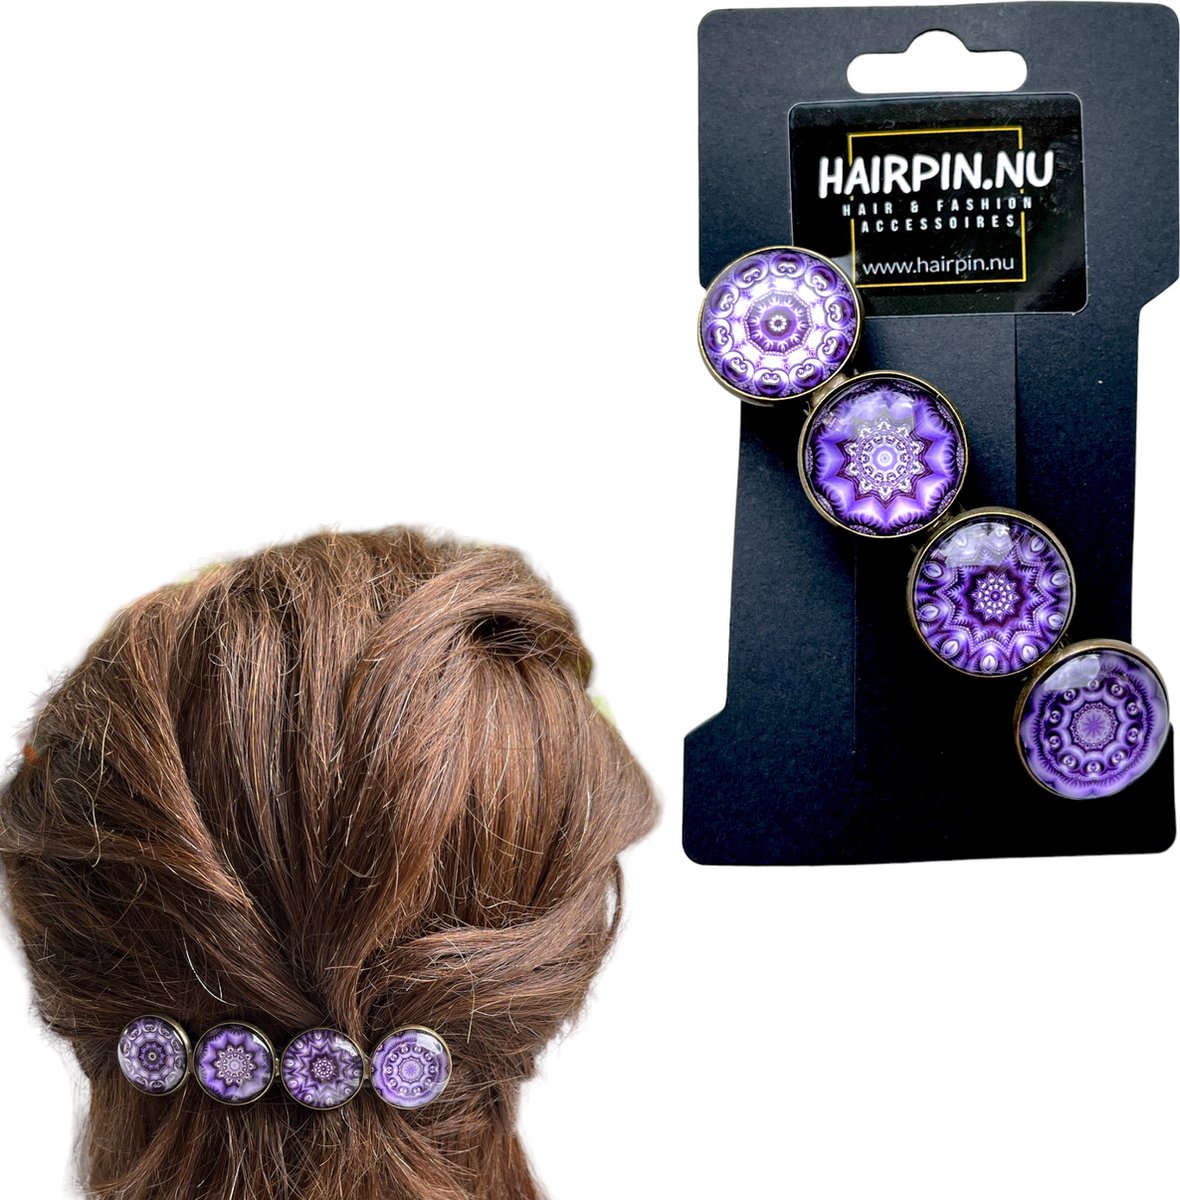 Hairclip XL glhairpin.nu-hairclip-haarspeld-bohemian-ibiza-boho-paars-lila-print